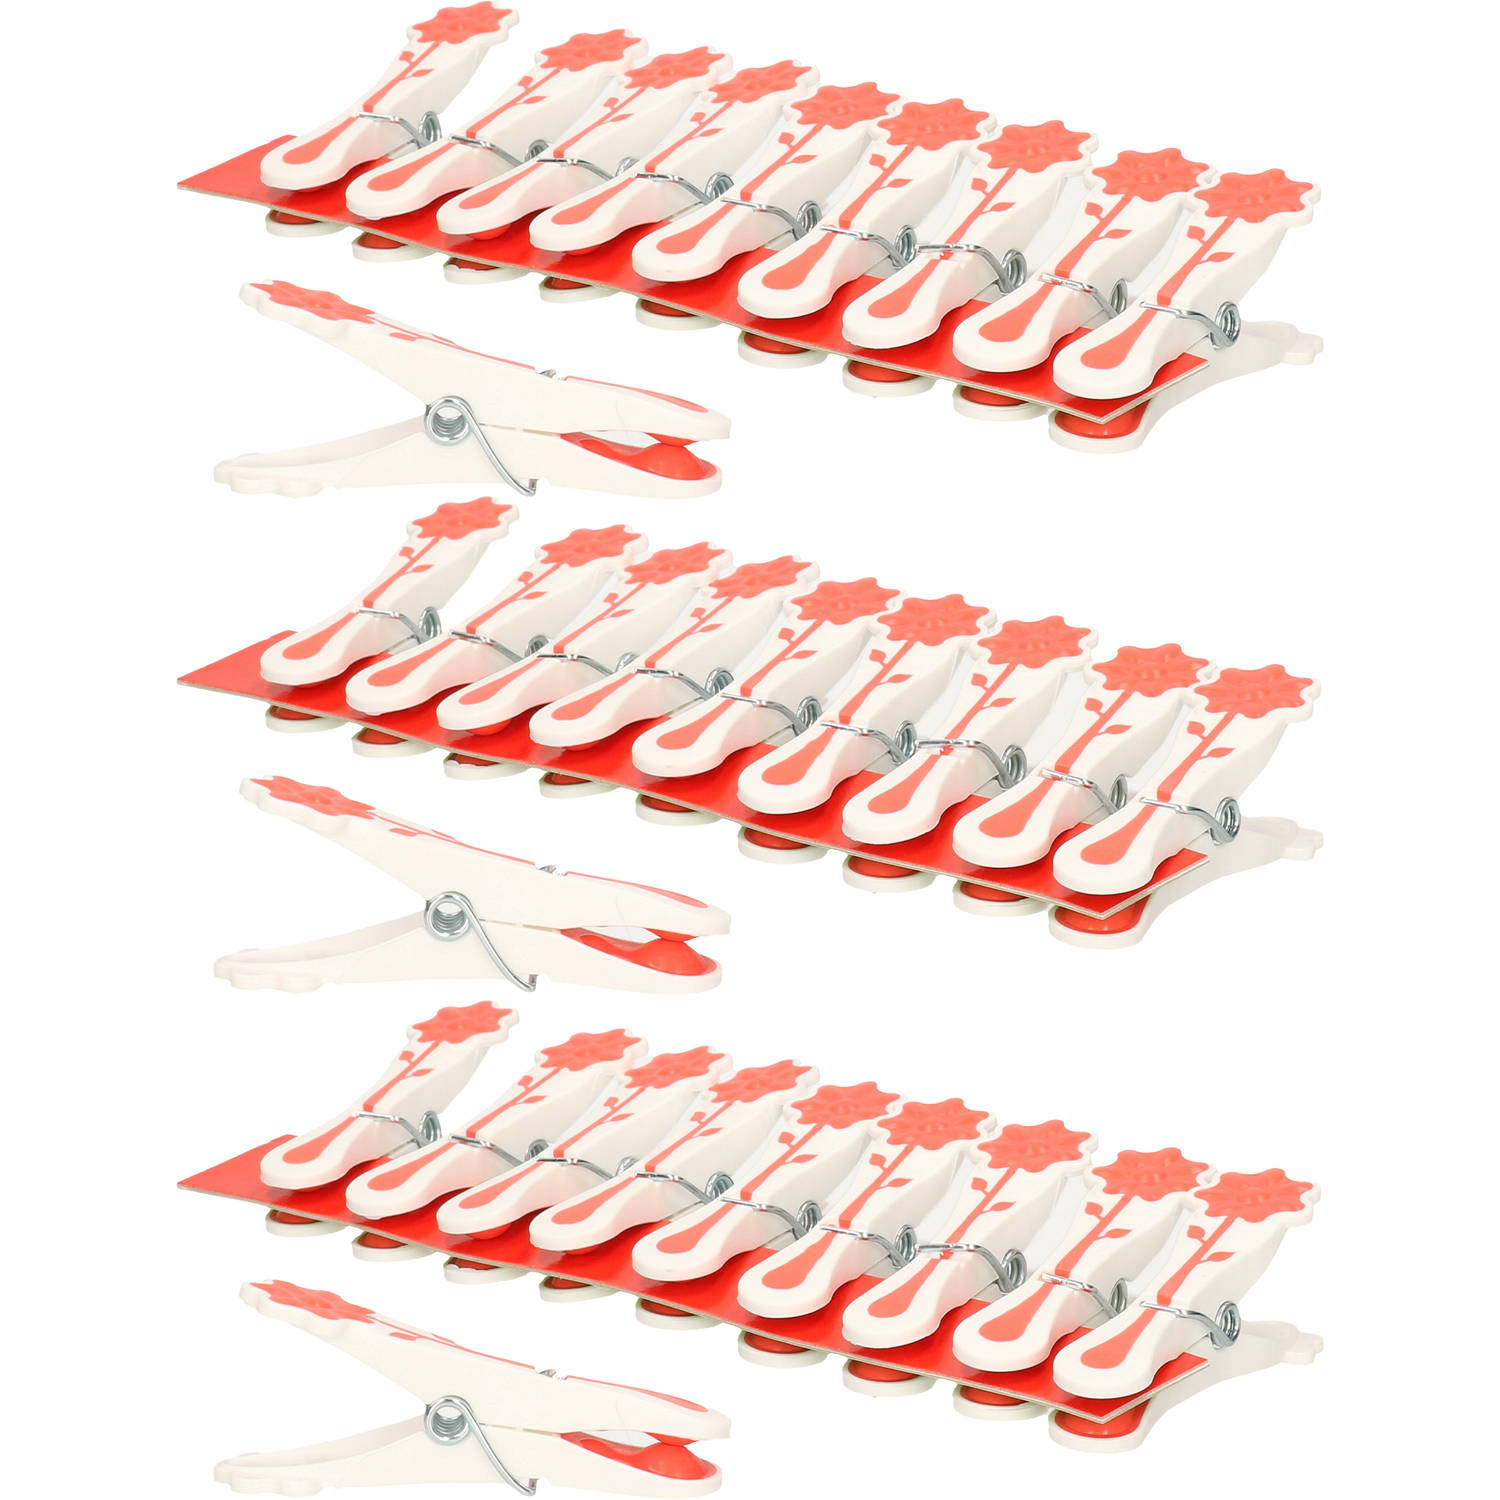 Concorde wasknijpers - 30x - rood - kunststof - 8 cm - Knijpers